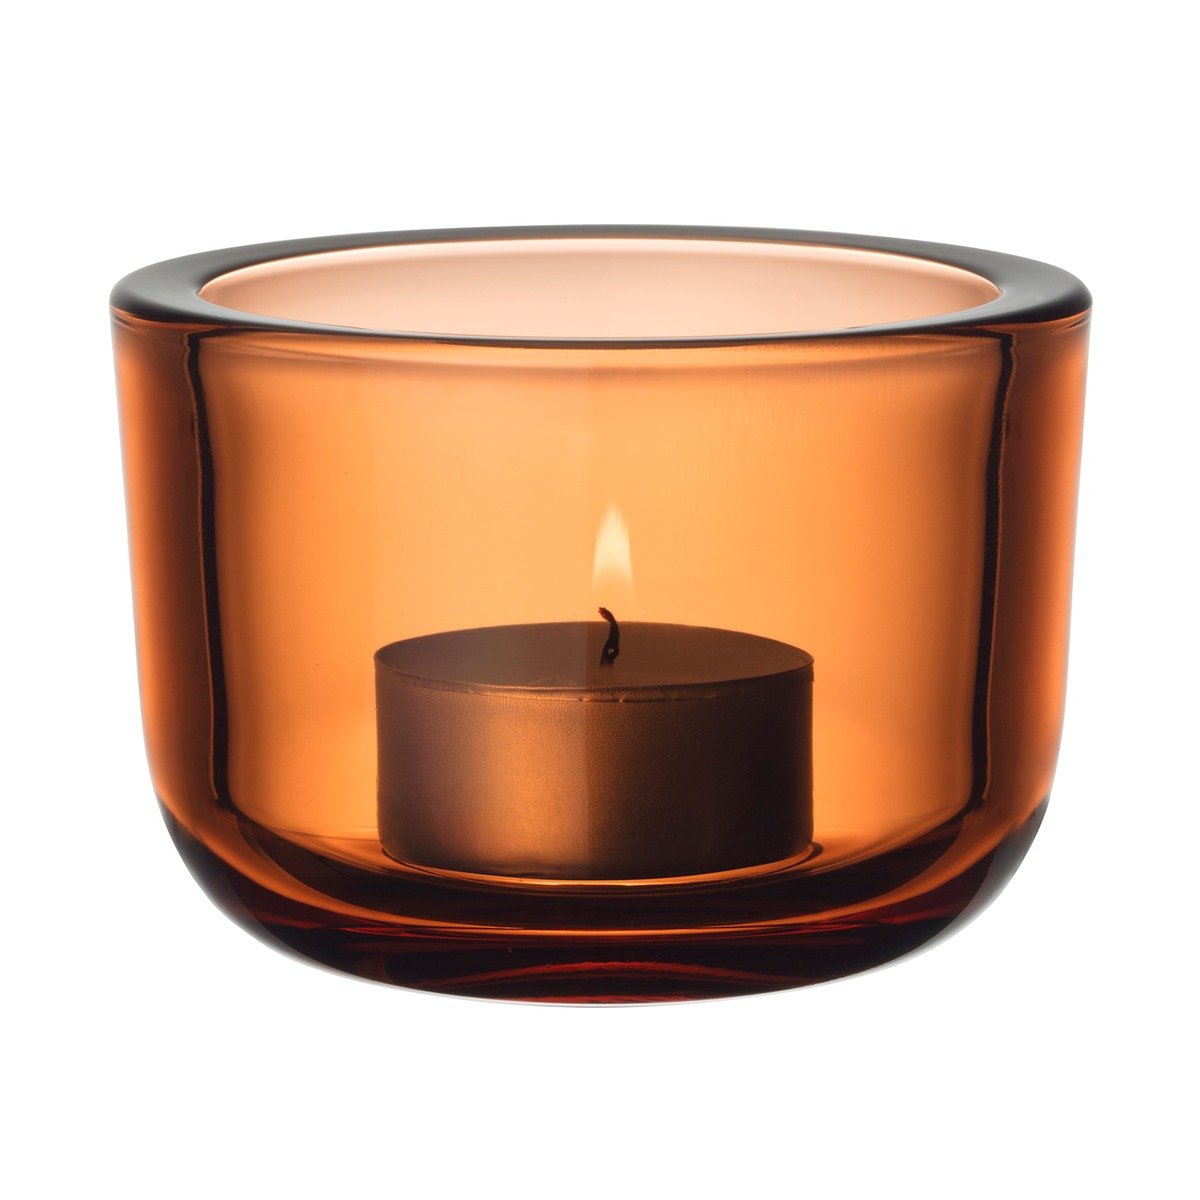 Iittala Valkea tealight candleholder 60 mm, seville orange | Pre-used ...